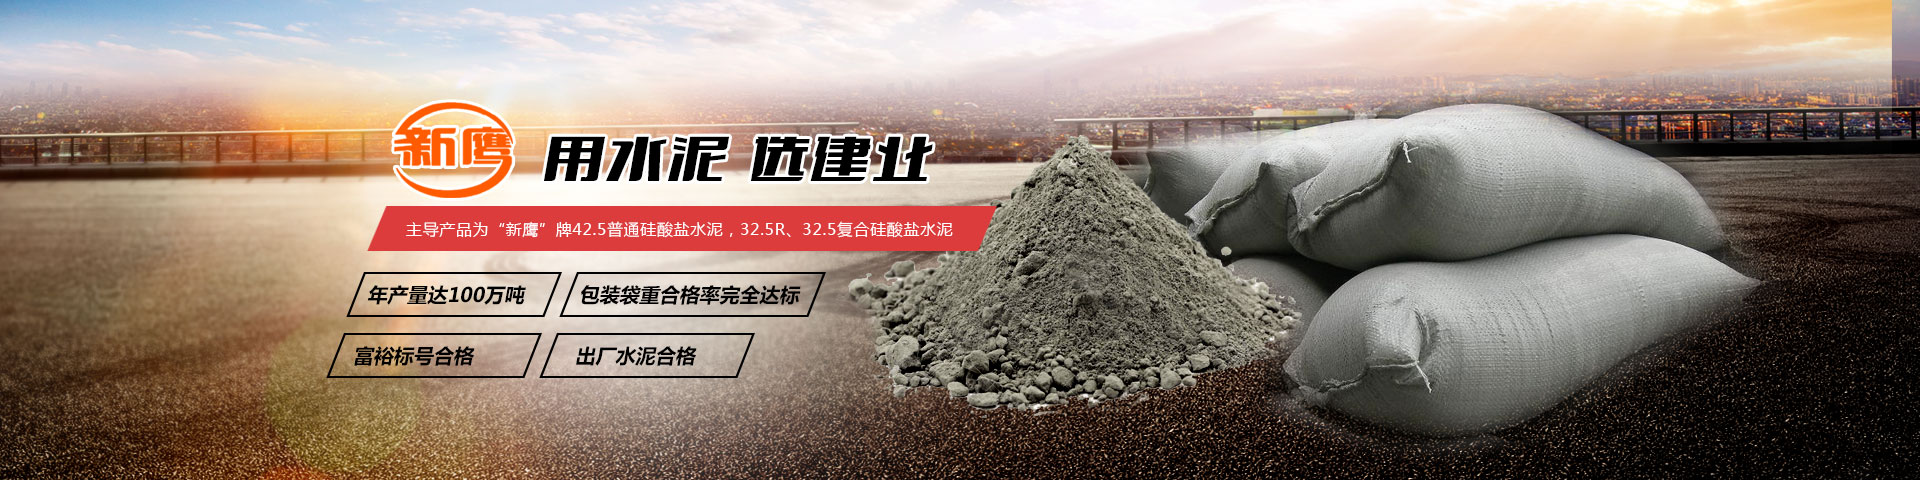 水泥批发_河南建筑水泥生产厂家_供应32.5复合硅酸盐水泥_42.5普通硅酸盐水泥